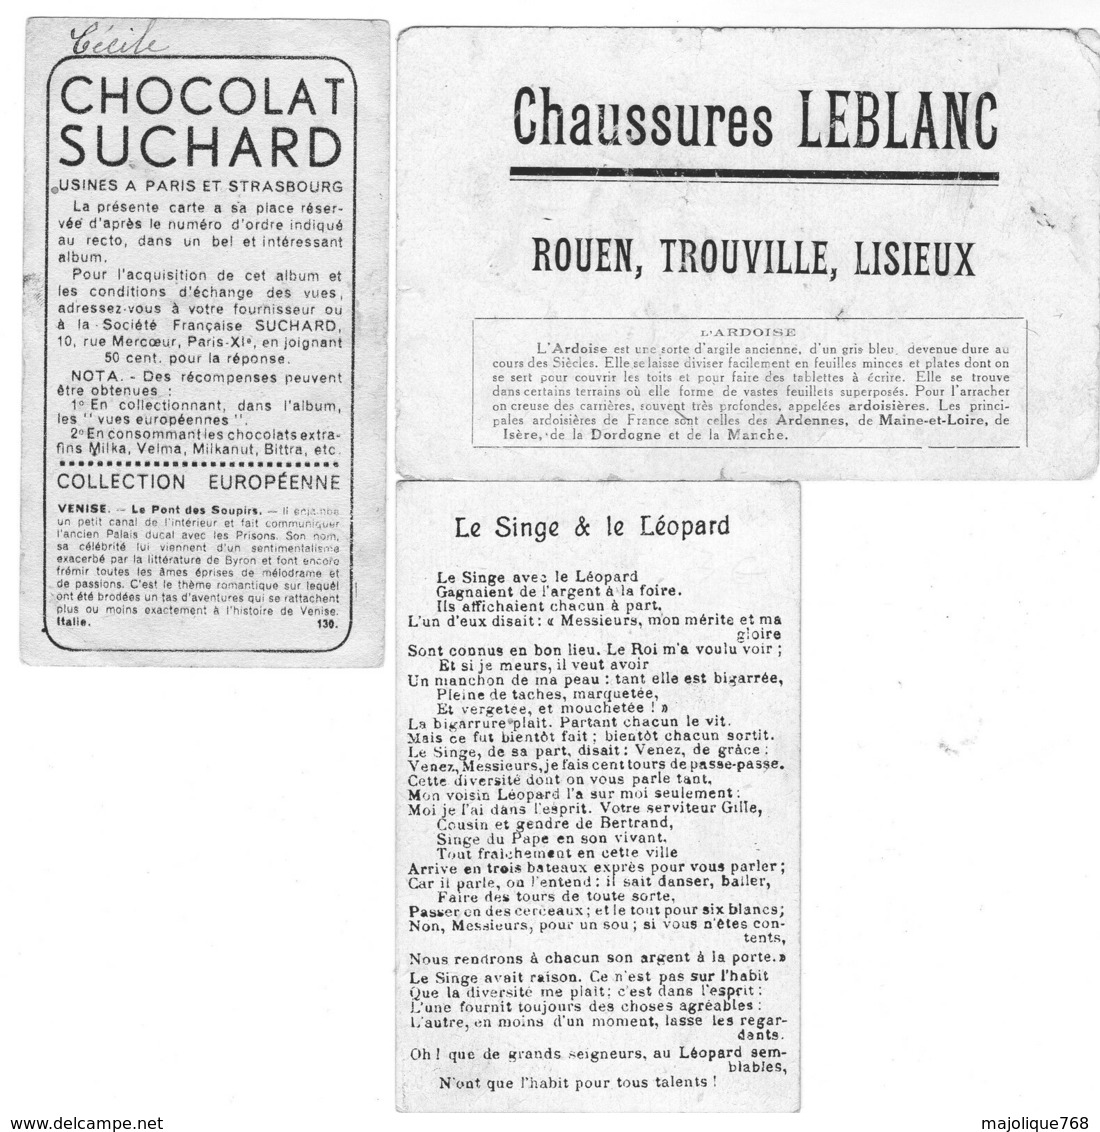 3 Images Publicité- 1 Chaussures Leblanc 1 Fable De La Fontaine 1 Chocolat Fauchard. - Collections